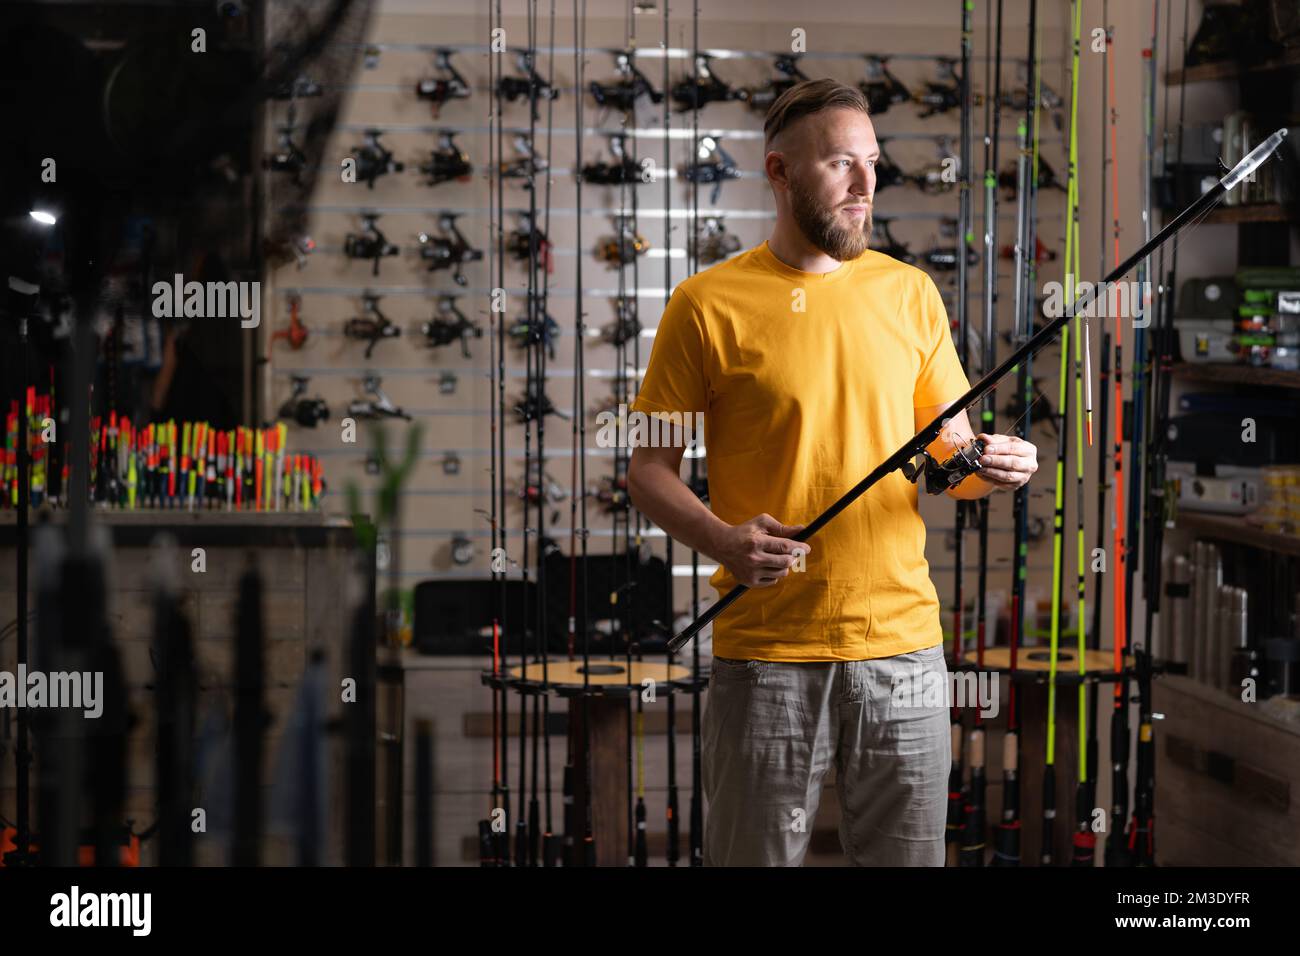 Man shopper choosing fishing rod in fishing store, copy space Stock Photo